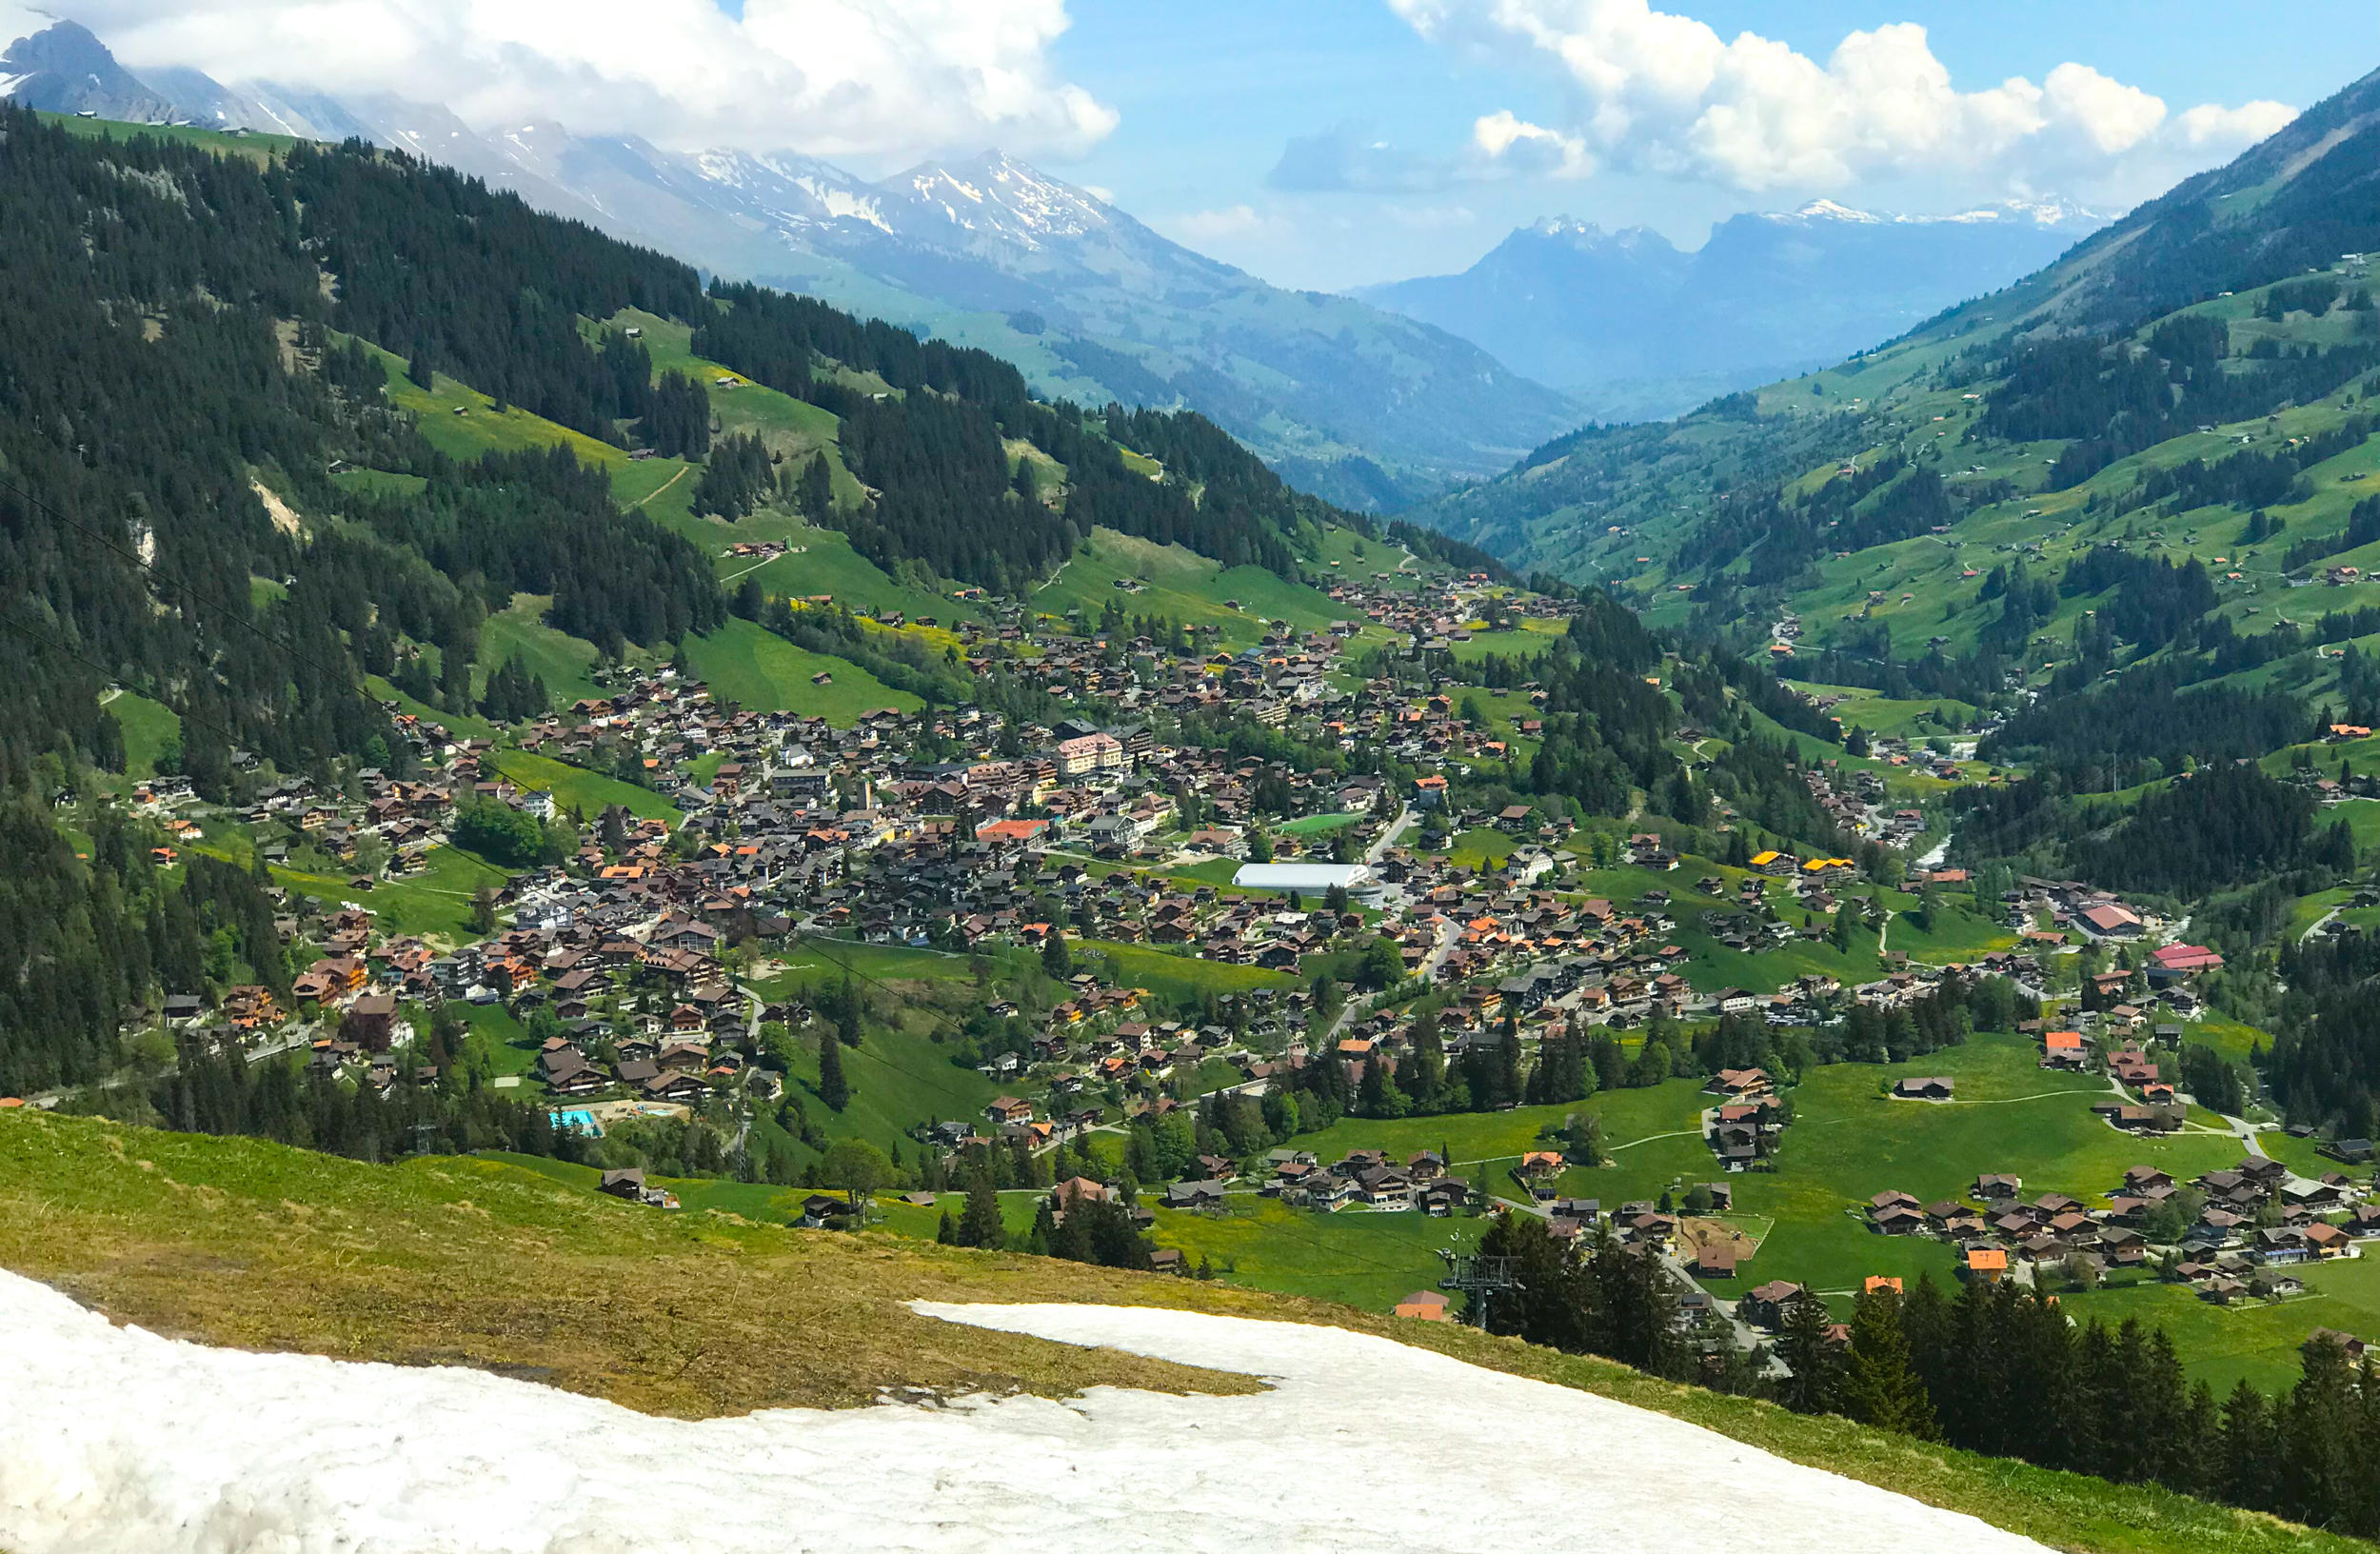 从海拔1700米高处的Cuenisberg俯瞰1300米的Adelboden。这里依然还有没有融化积雪。